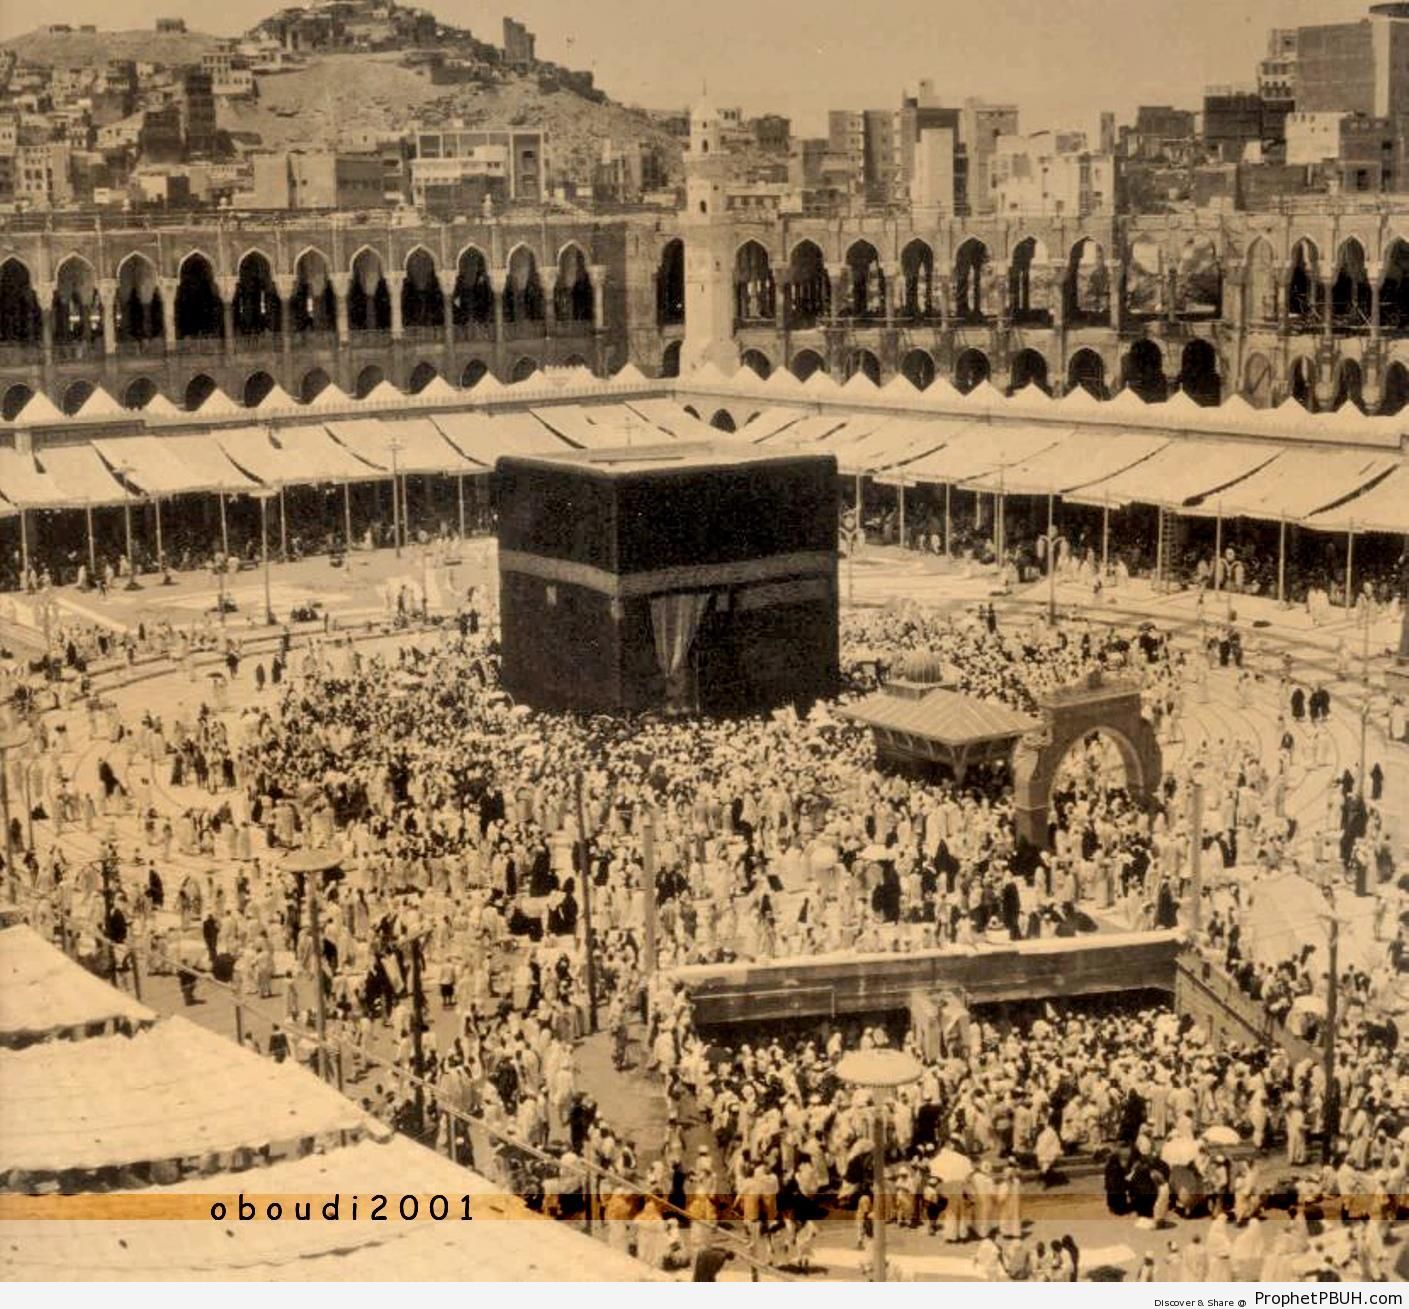 Old Photo of the Kaba in 1964 - al-Masjid al-Haram in Makkah, Saudi Arabia -Picture